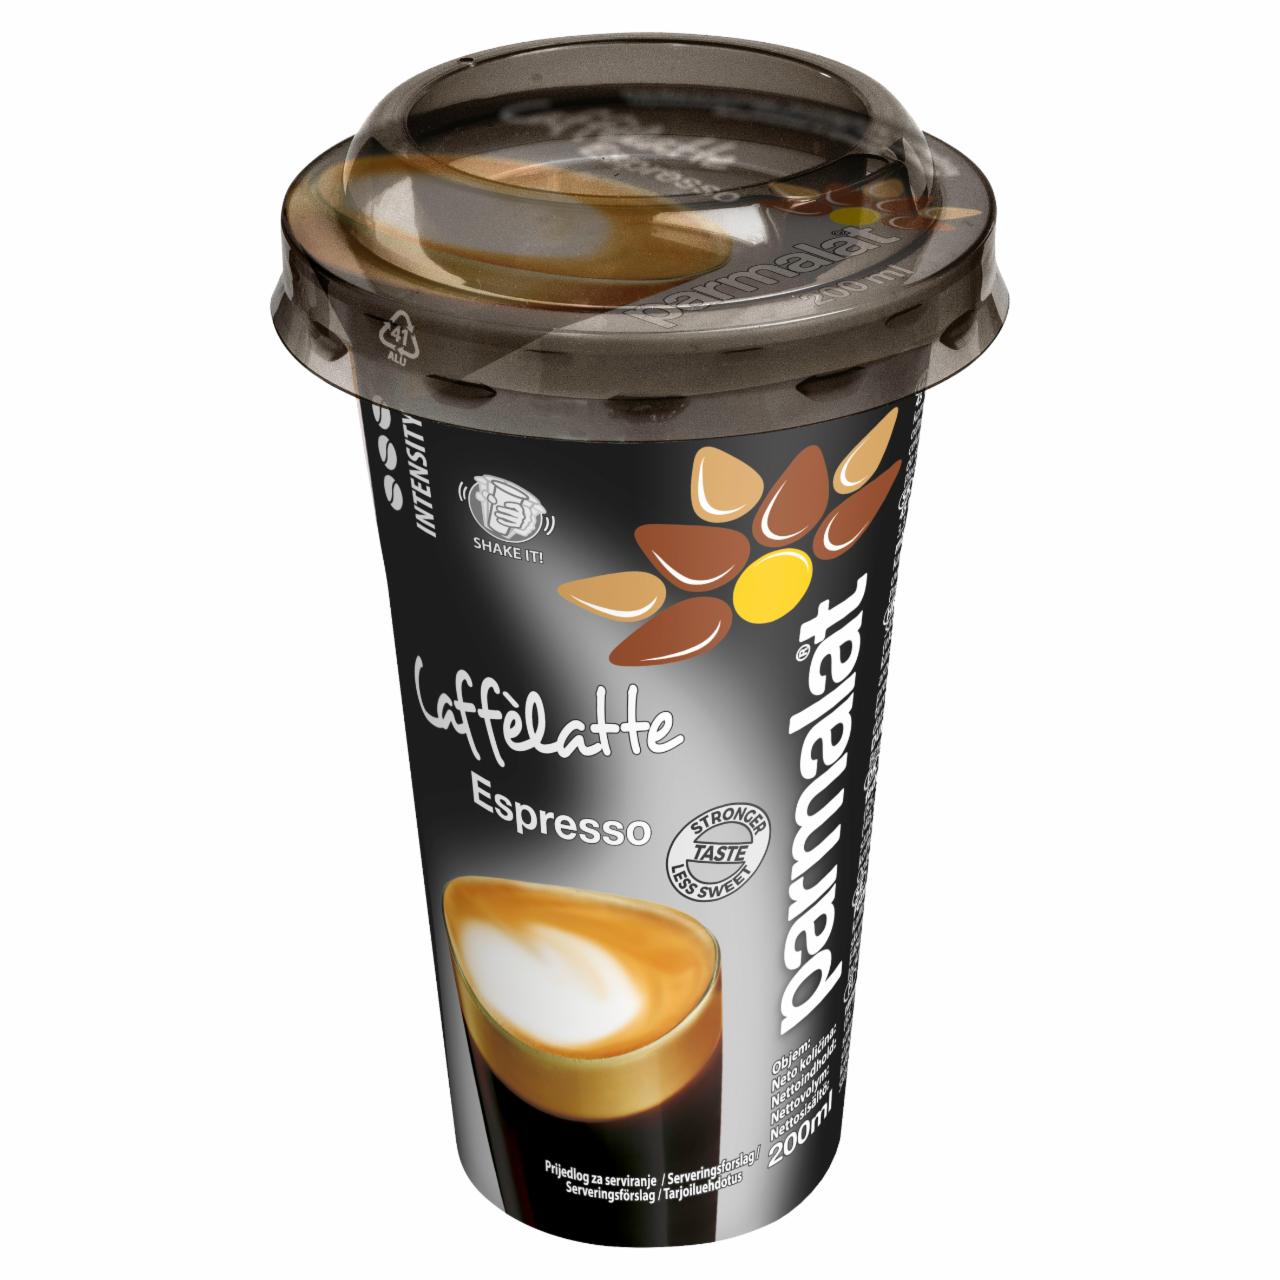 Képek - Parmalat Caffélatte Espresso UHT zsírszegény kávé ízű tejkészítmény 200 ml